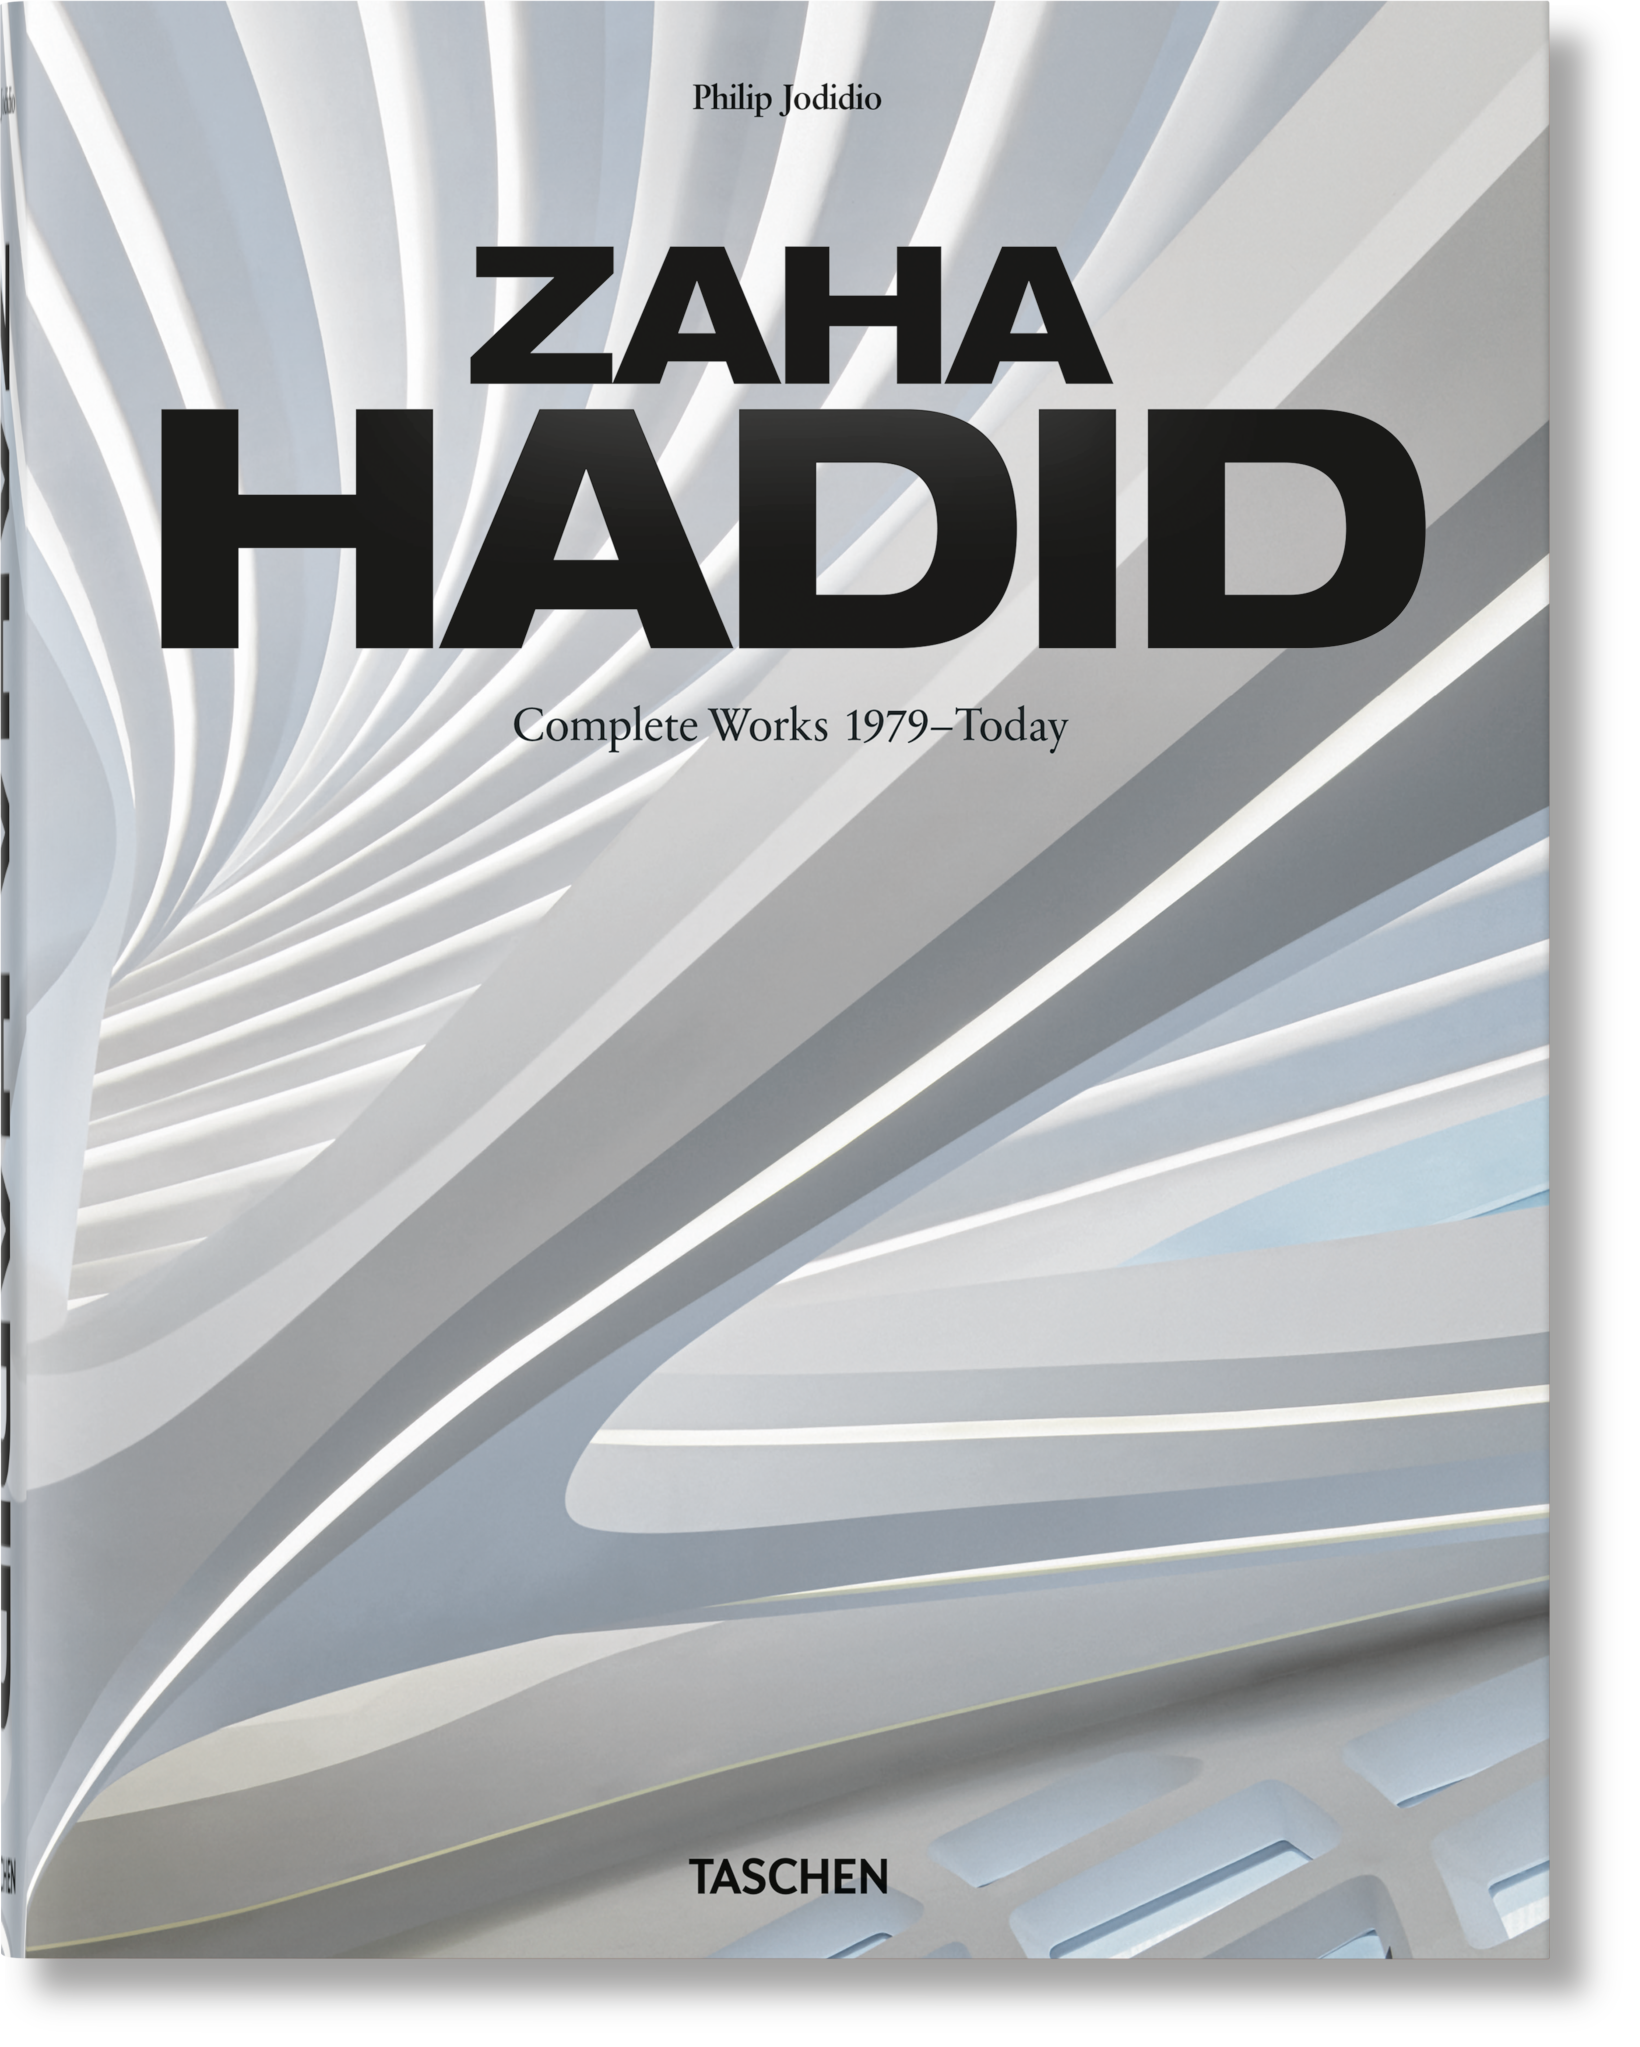 Zaha Hadid Taschen